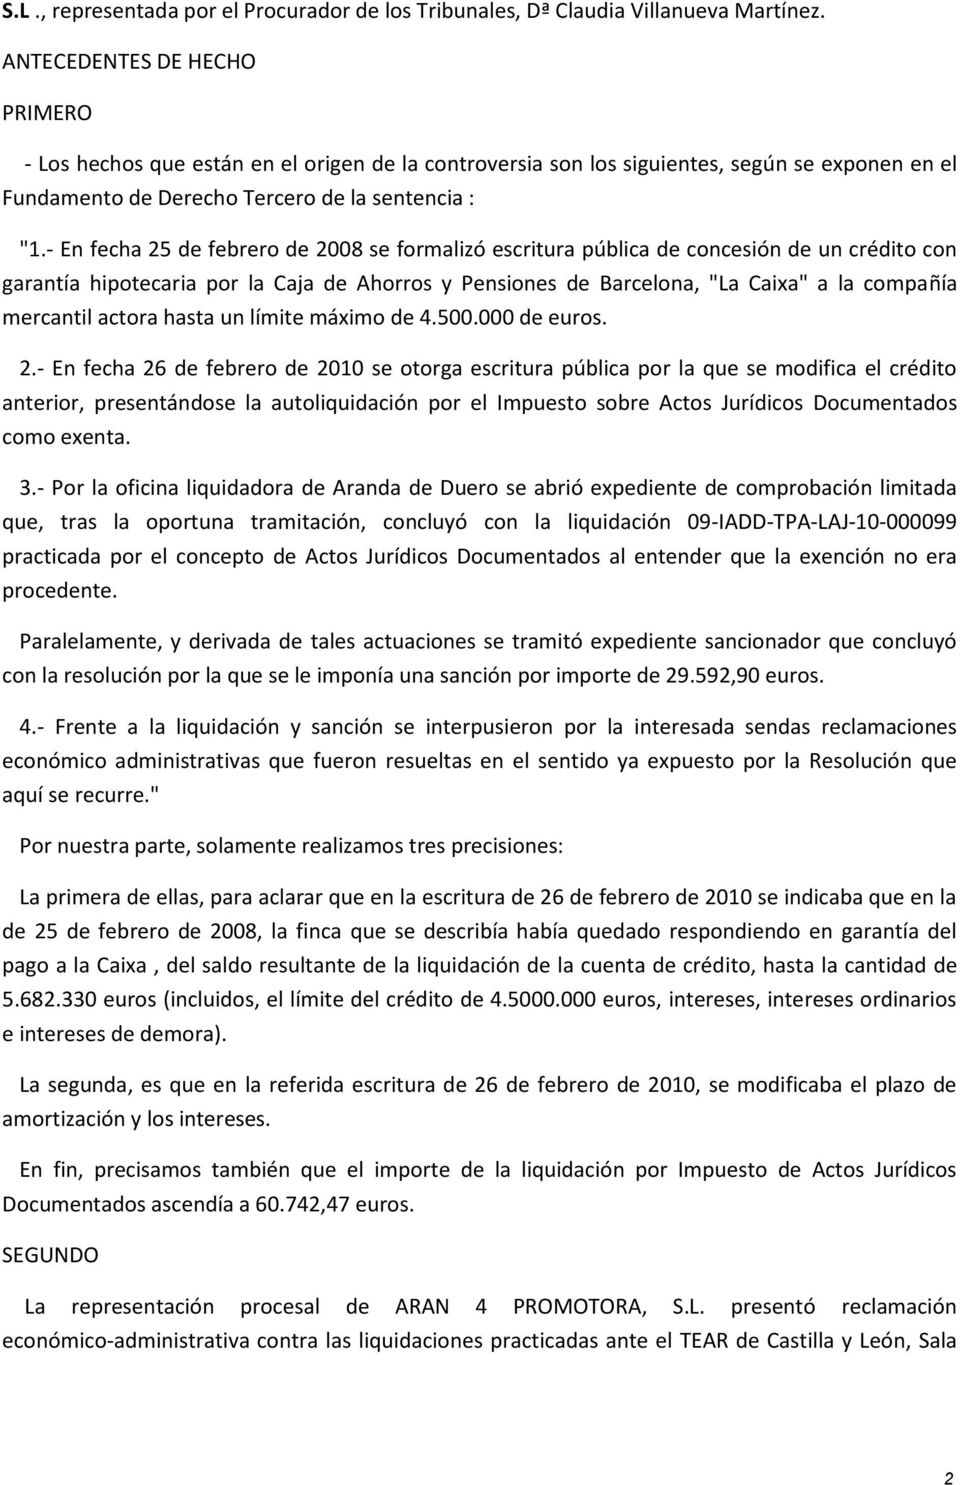 - En fecha 25 de febrero de 2008 se formalizó escritura pública de concesión de un crédito con garantía hipotecaria por la Caja de Ahorros y Pensiones de Barcelona, "La Caixa" a la compañía mercantil